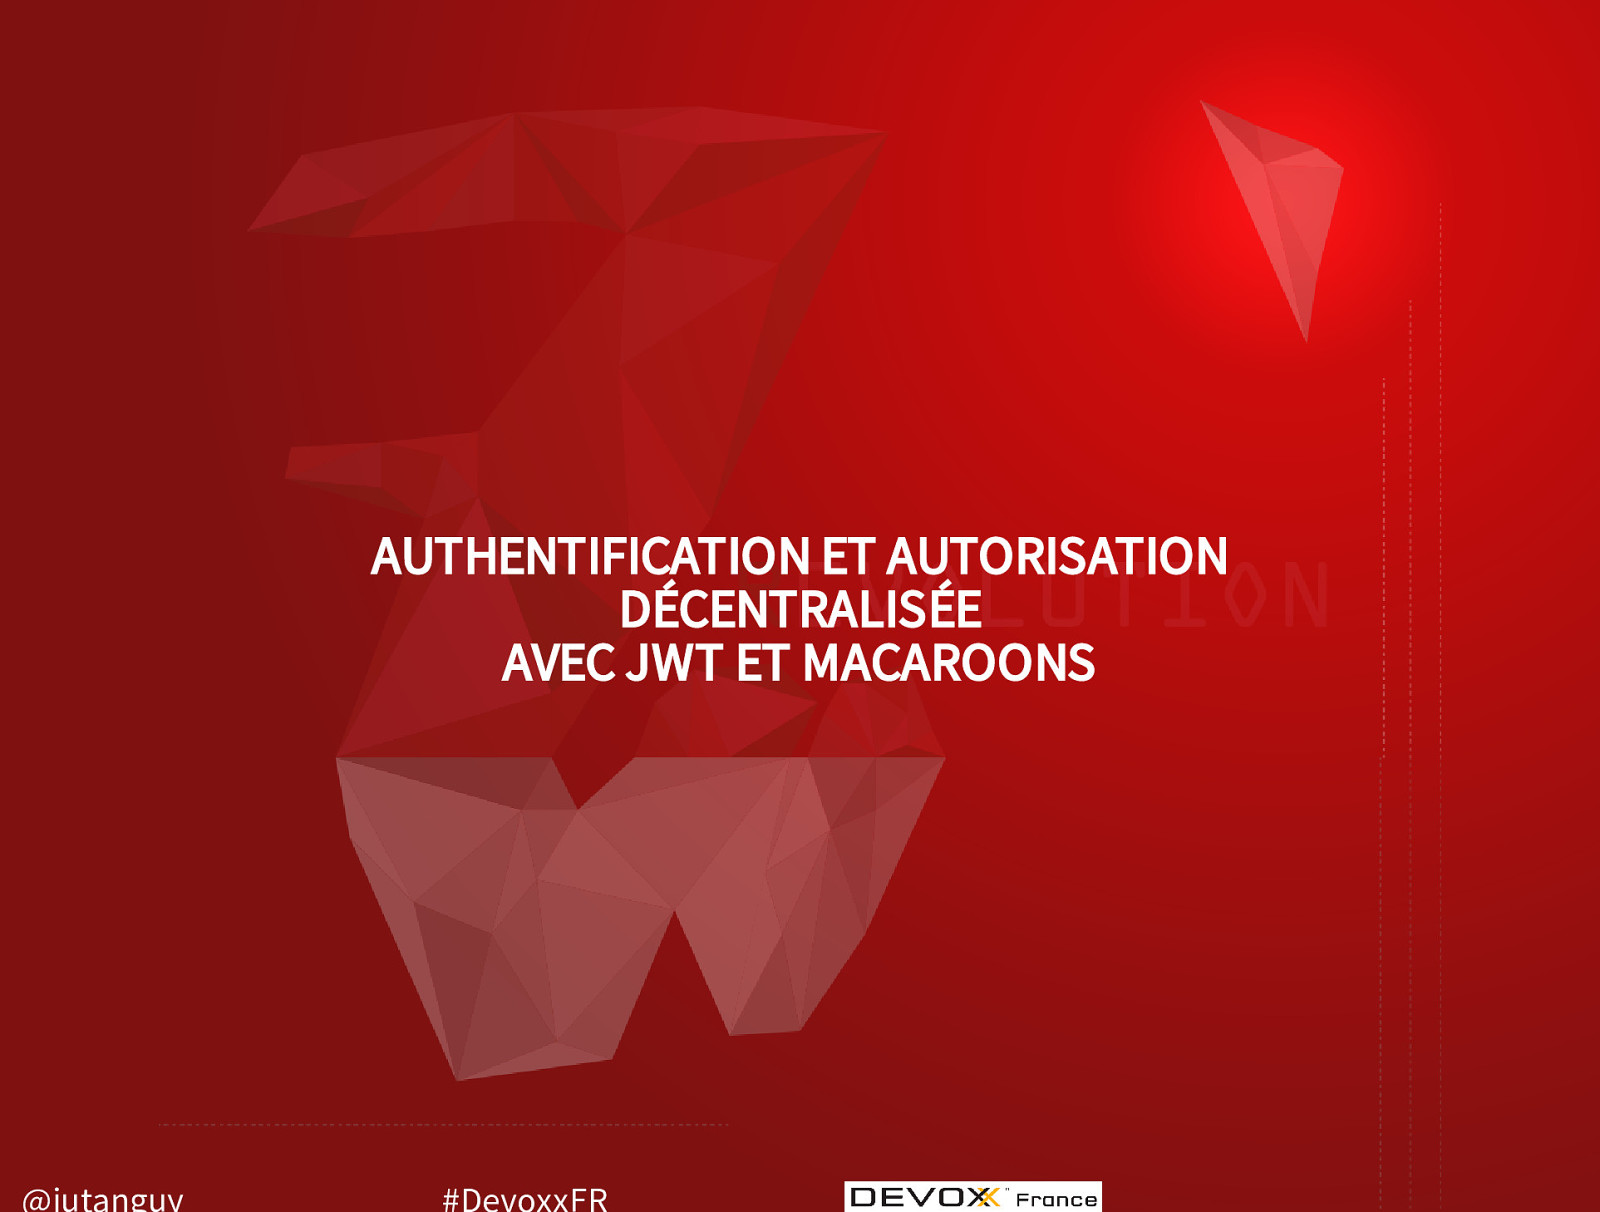 Authentification et autorisation décentralisée avec JWT et Macaroons